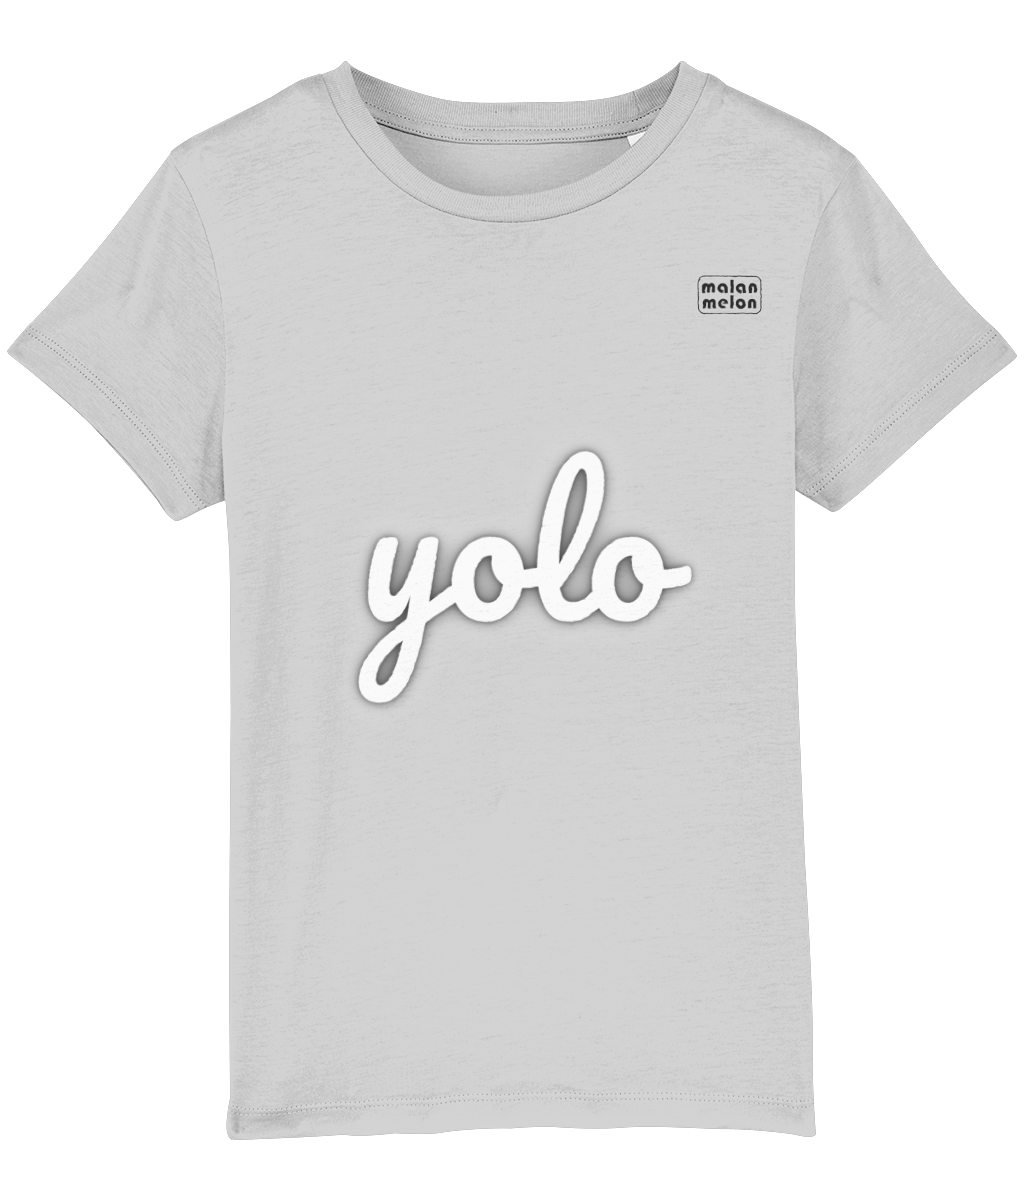 malanmelon - Kids T-Shirt – Organic Cotton – yolo Slogan – White on Multi-Colours